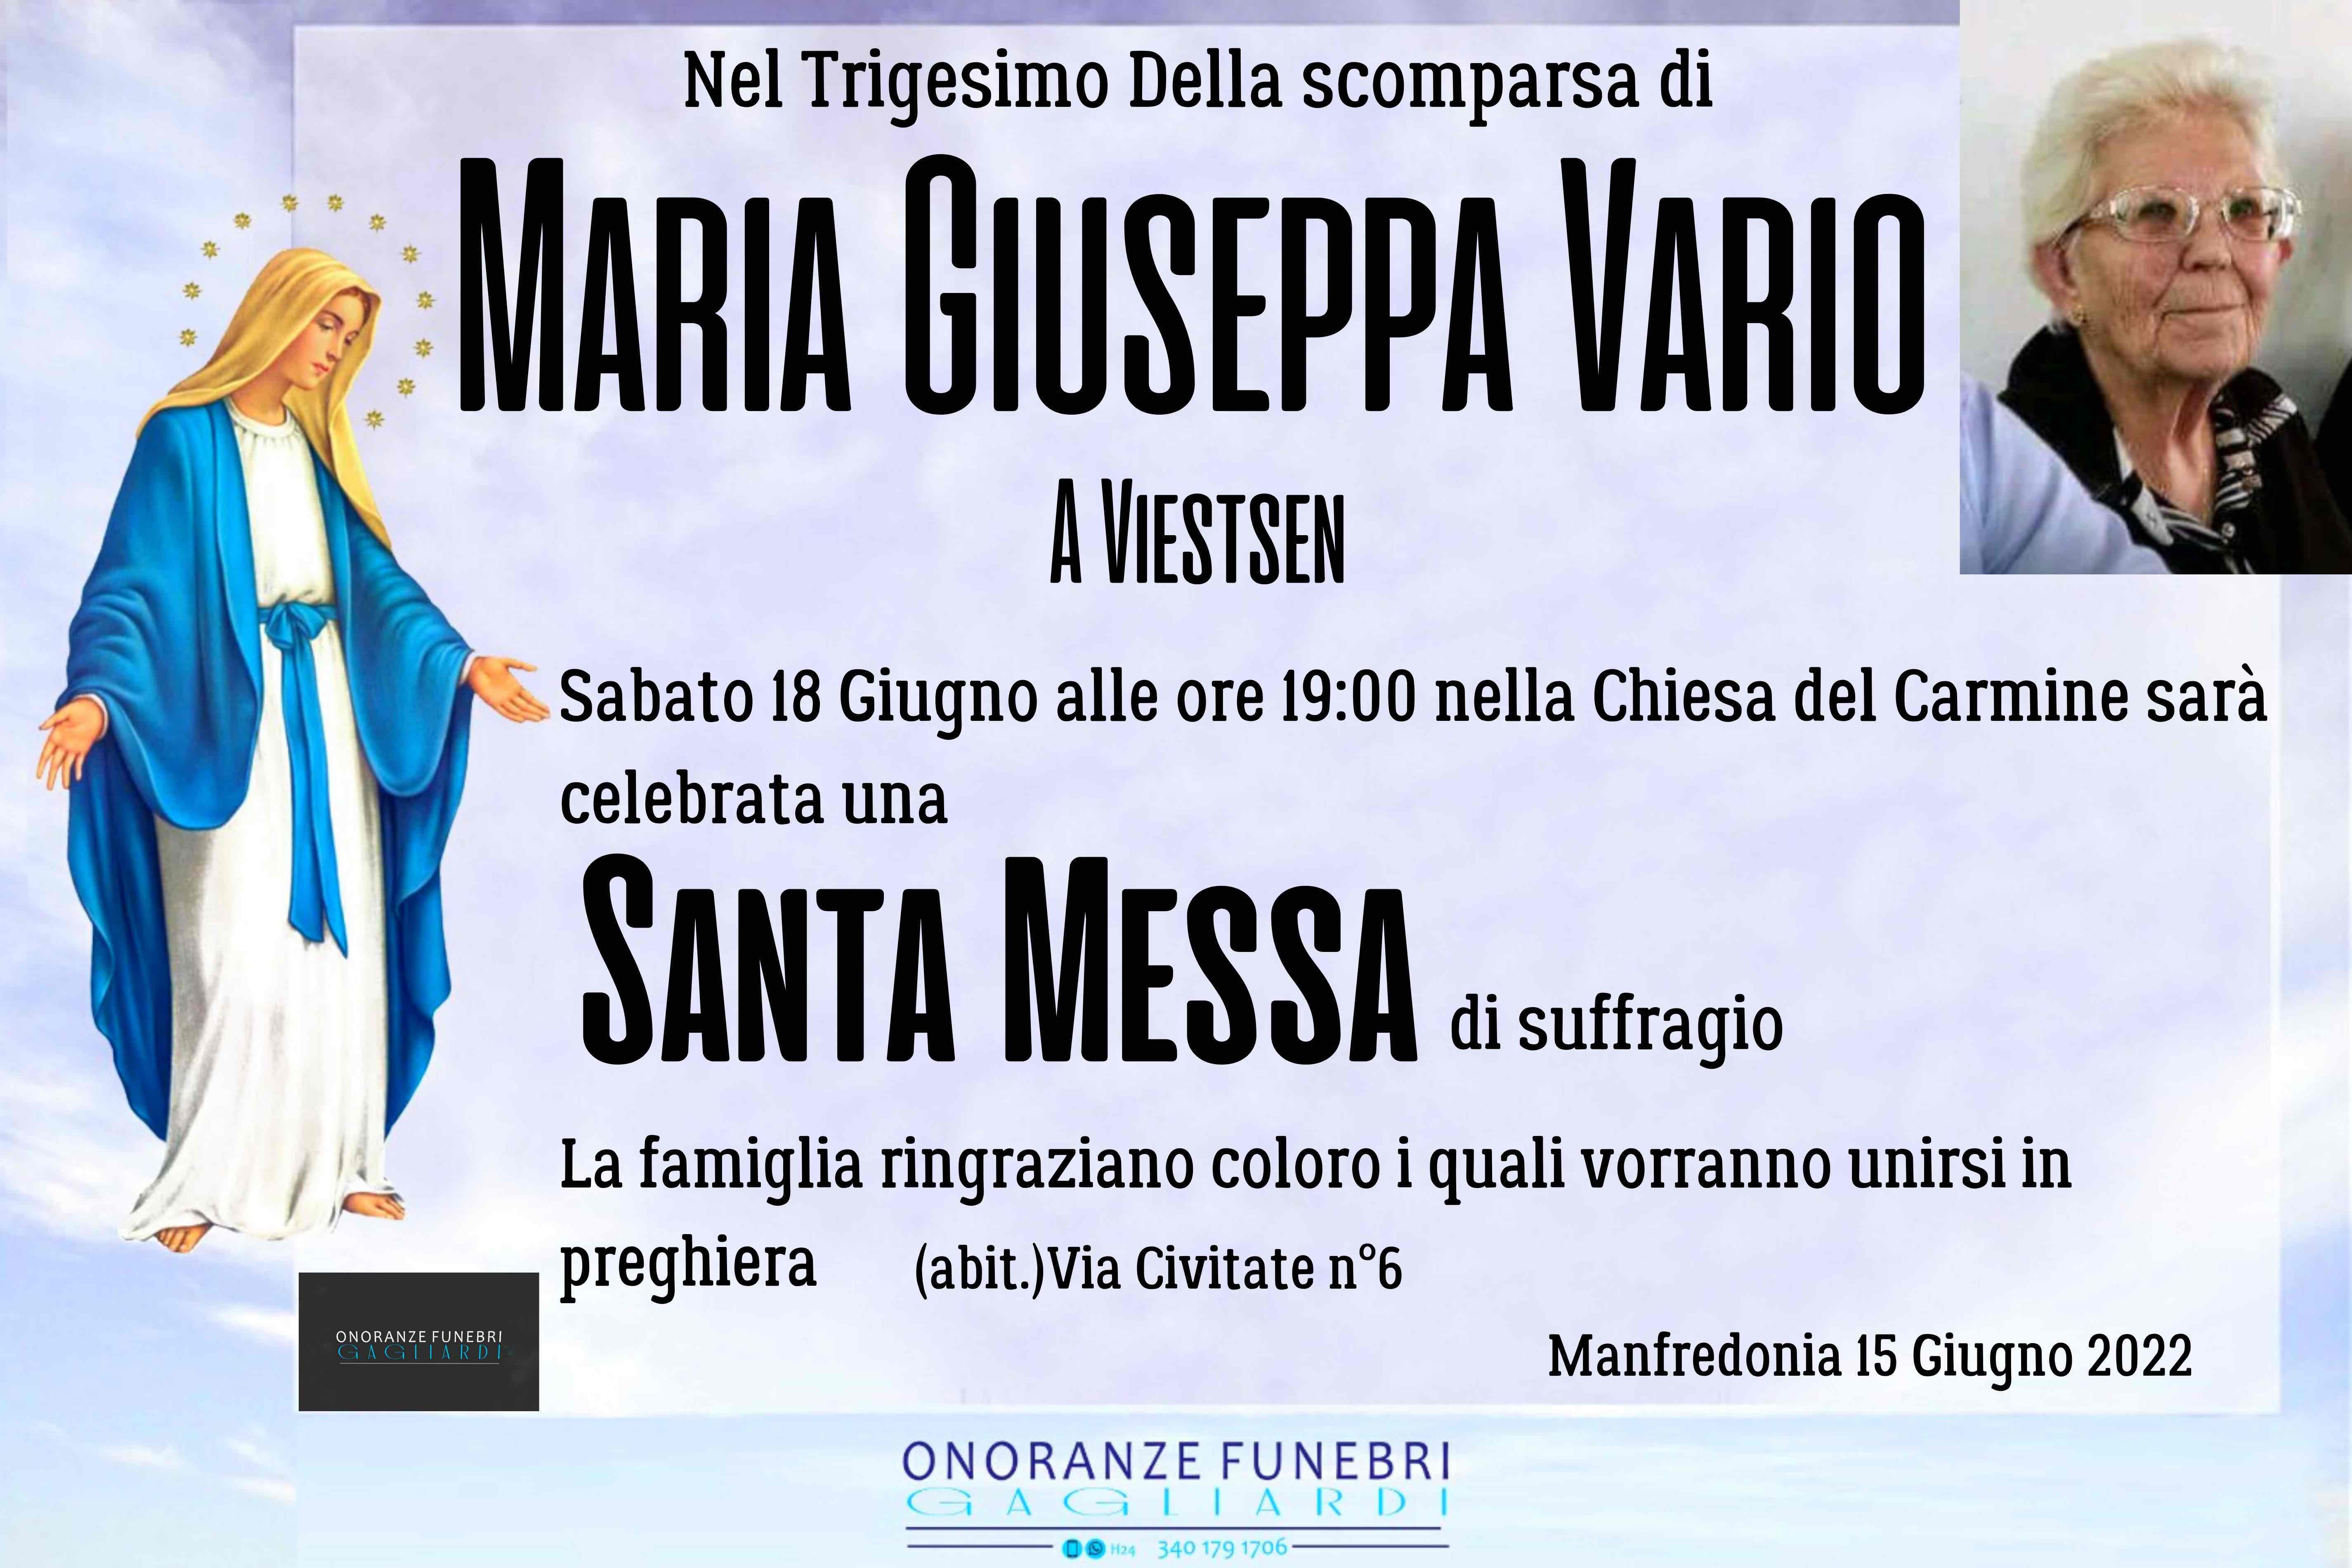 Maria Giuseppa Vario